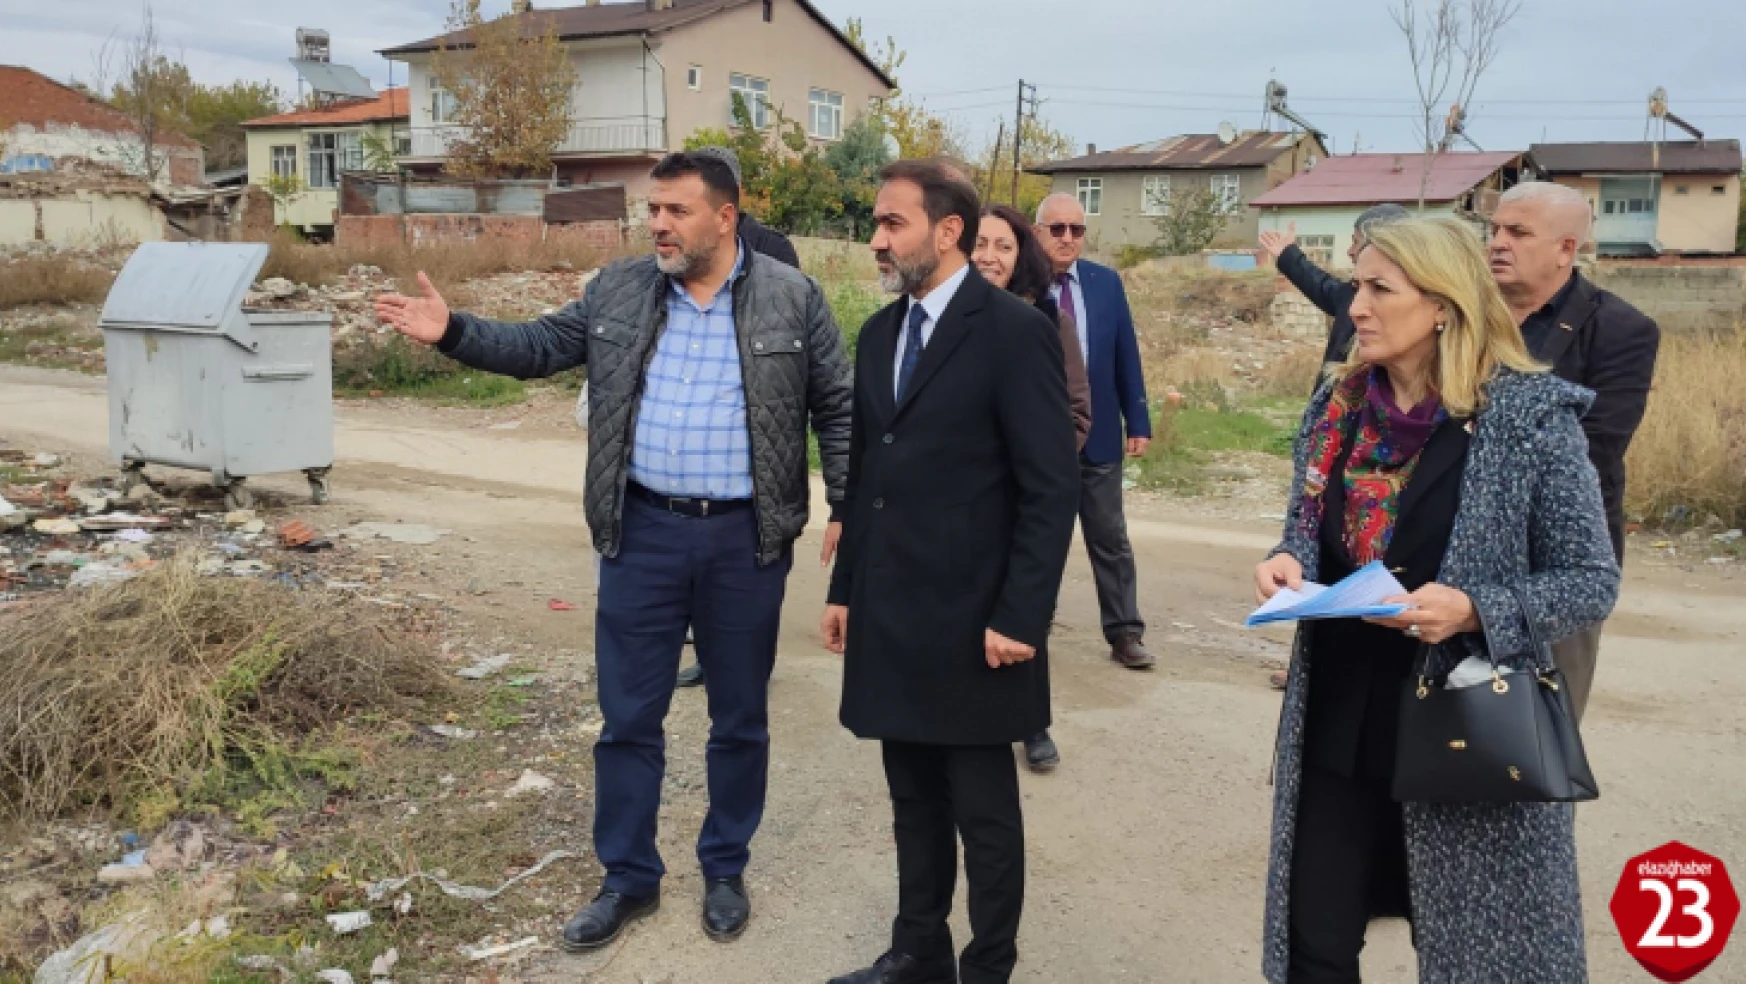 CHP'nin 41 Günde 41 Mahalle gezileri Salıbaba Mahallesi ile Devam Etti